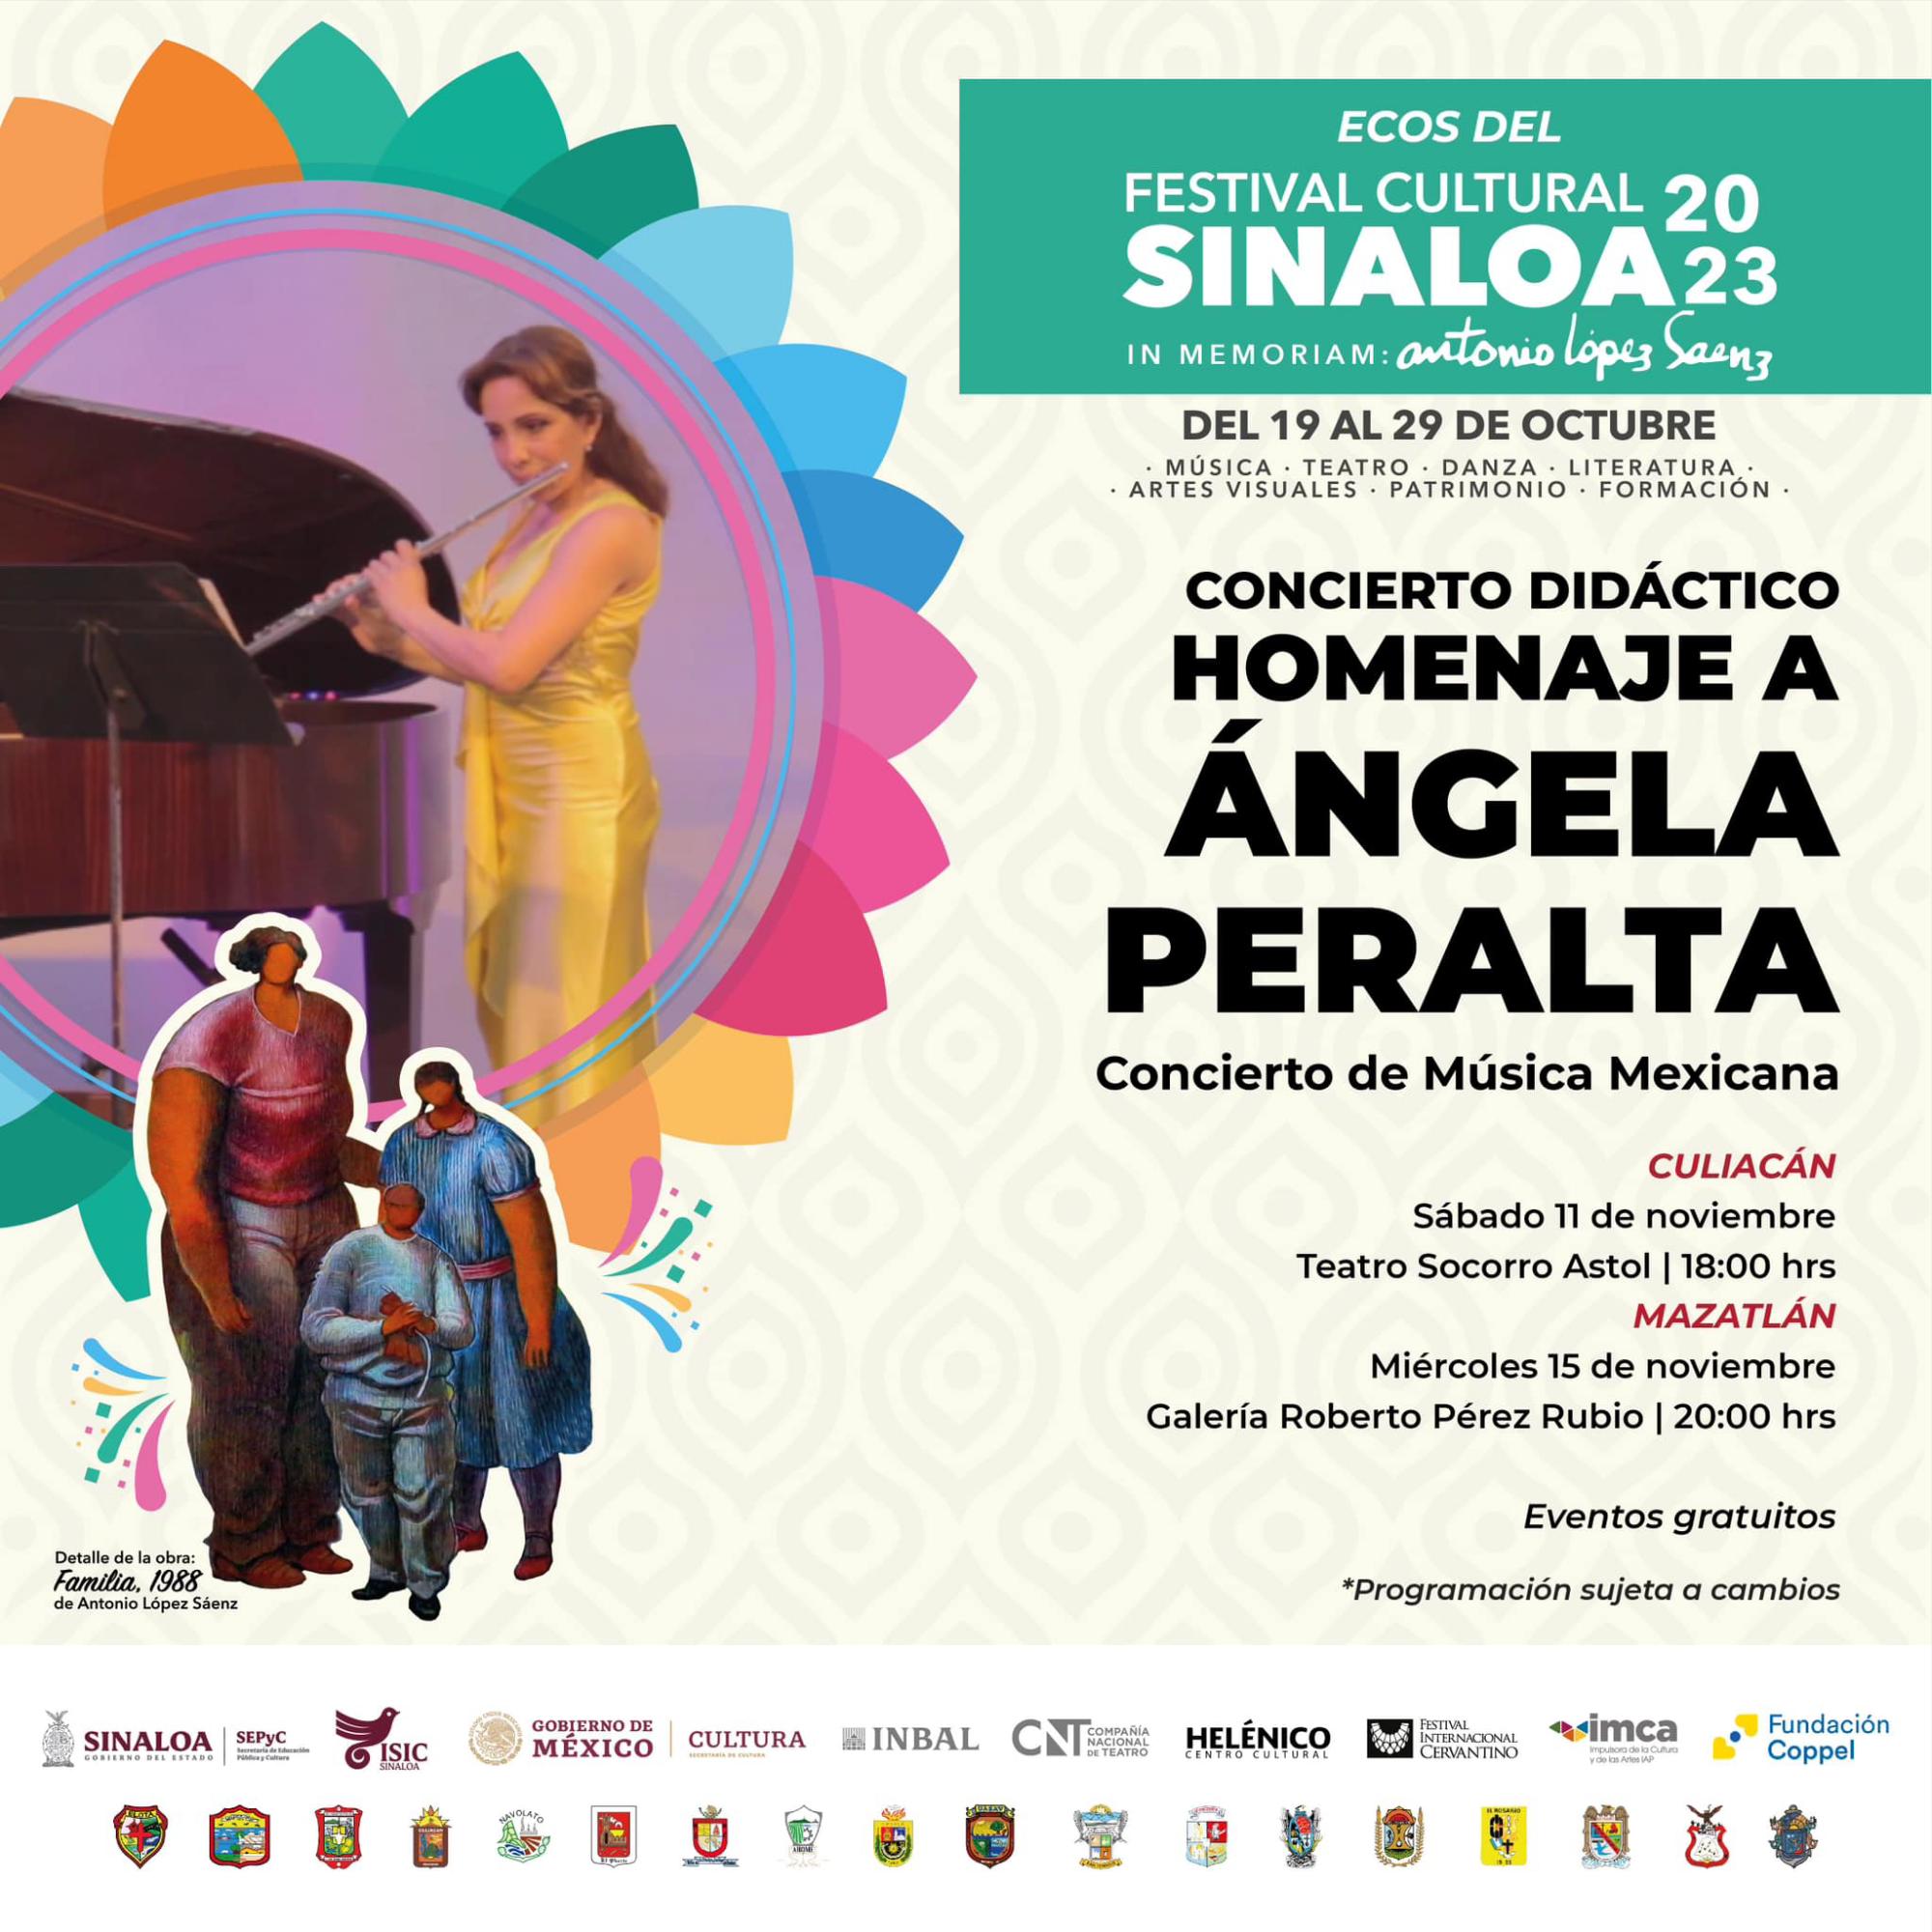 $!En Culiacán y Mazatlán se reprogramó el concierto didáctico Homenaje a Ángela Peralta.